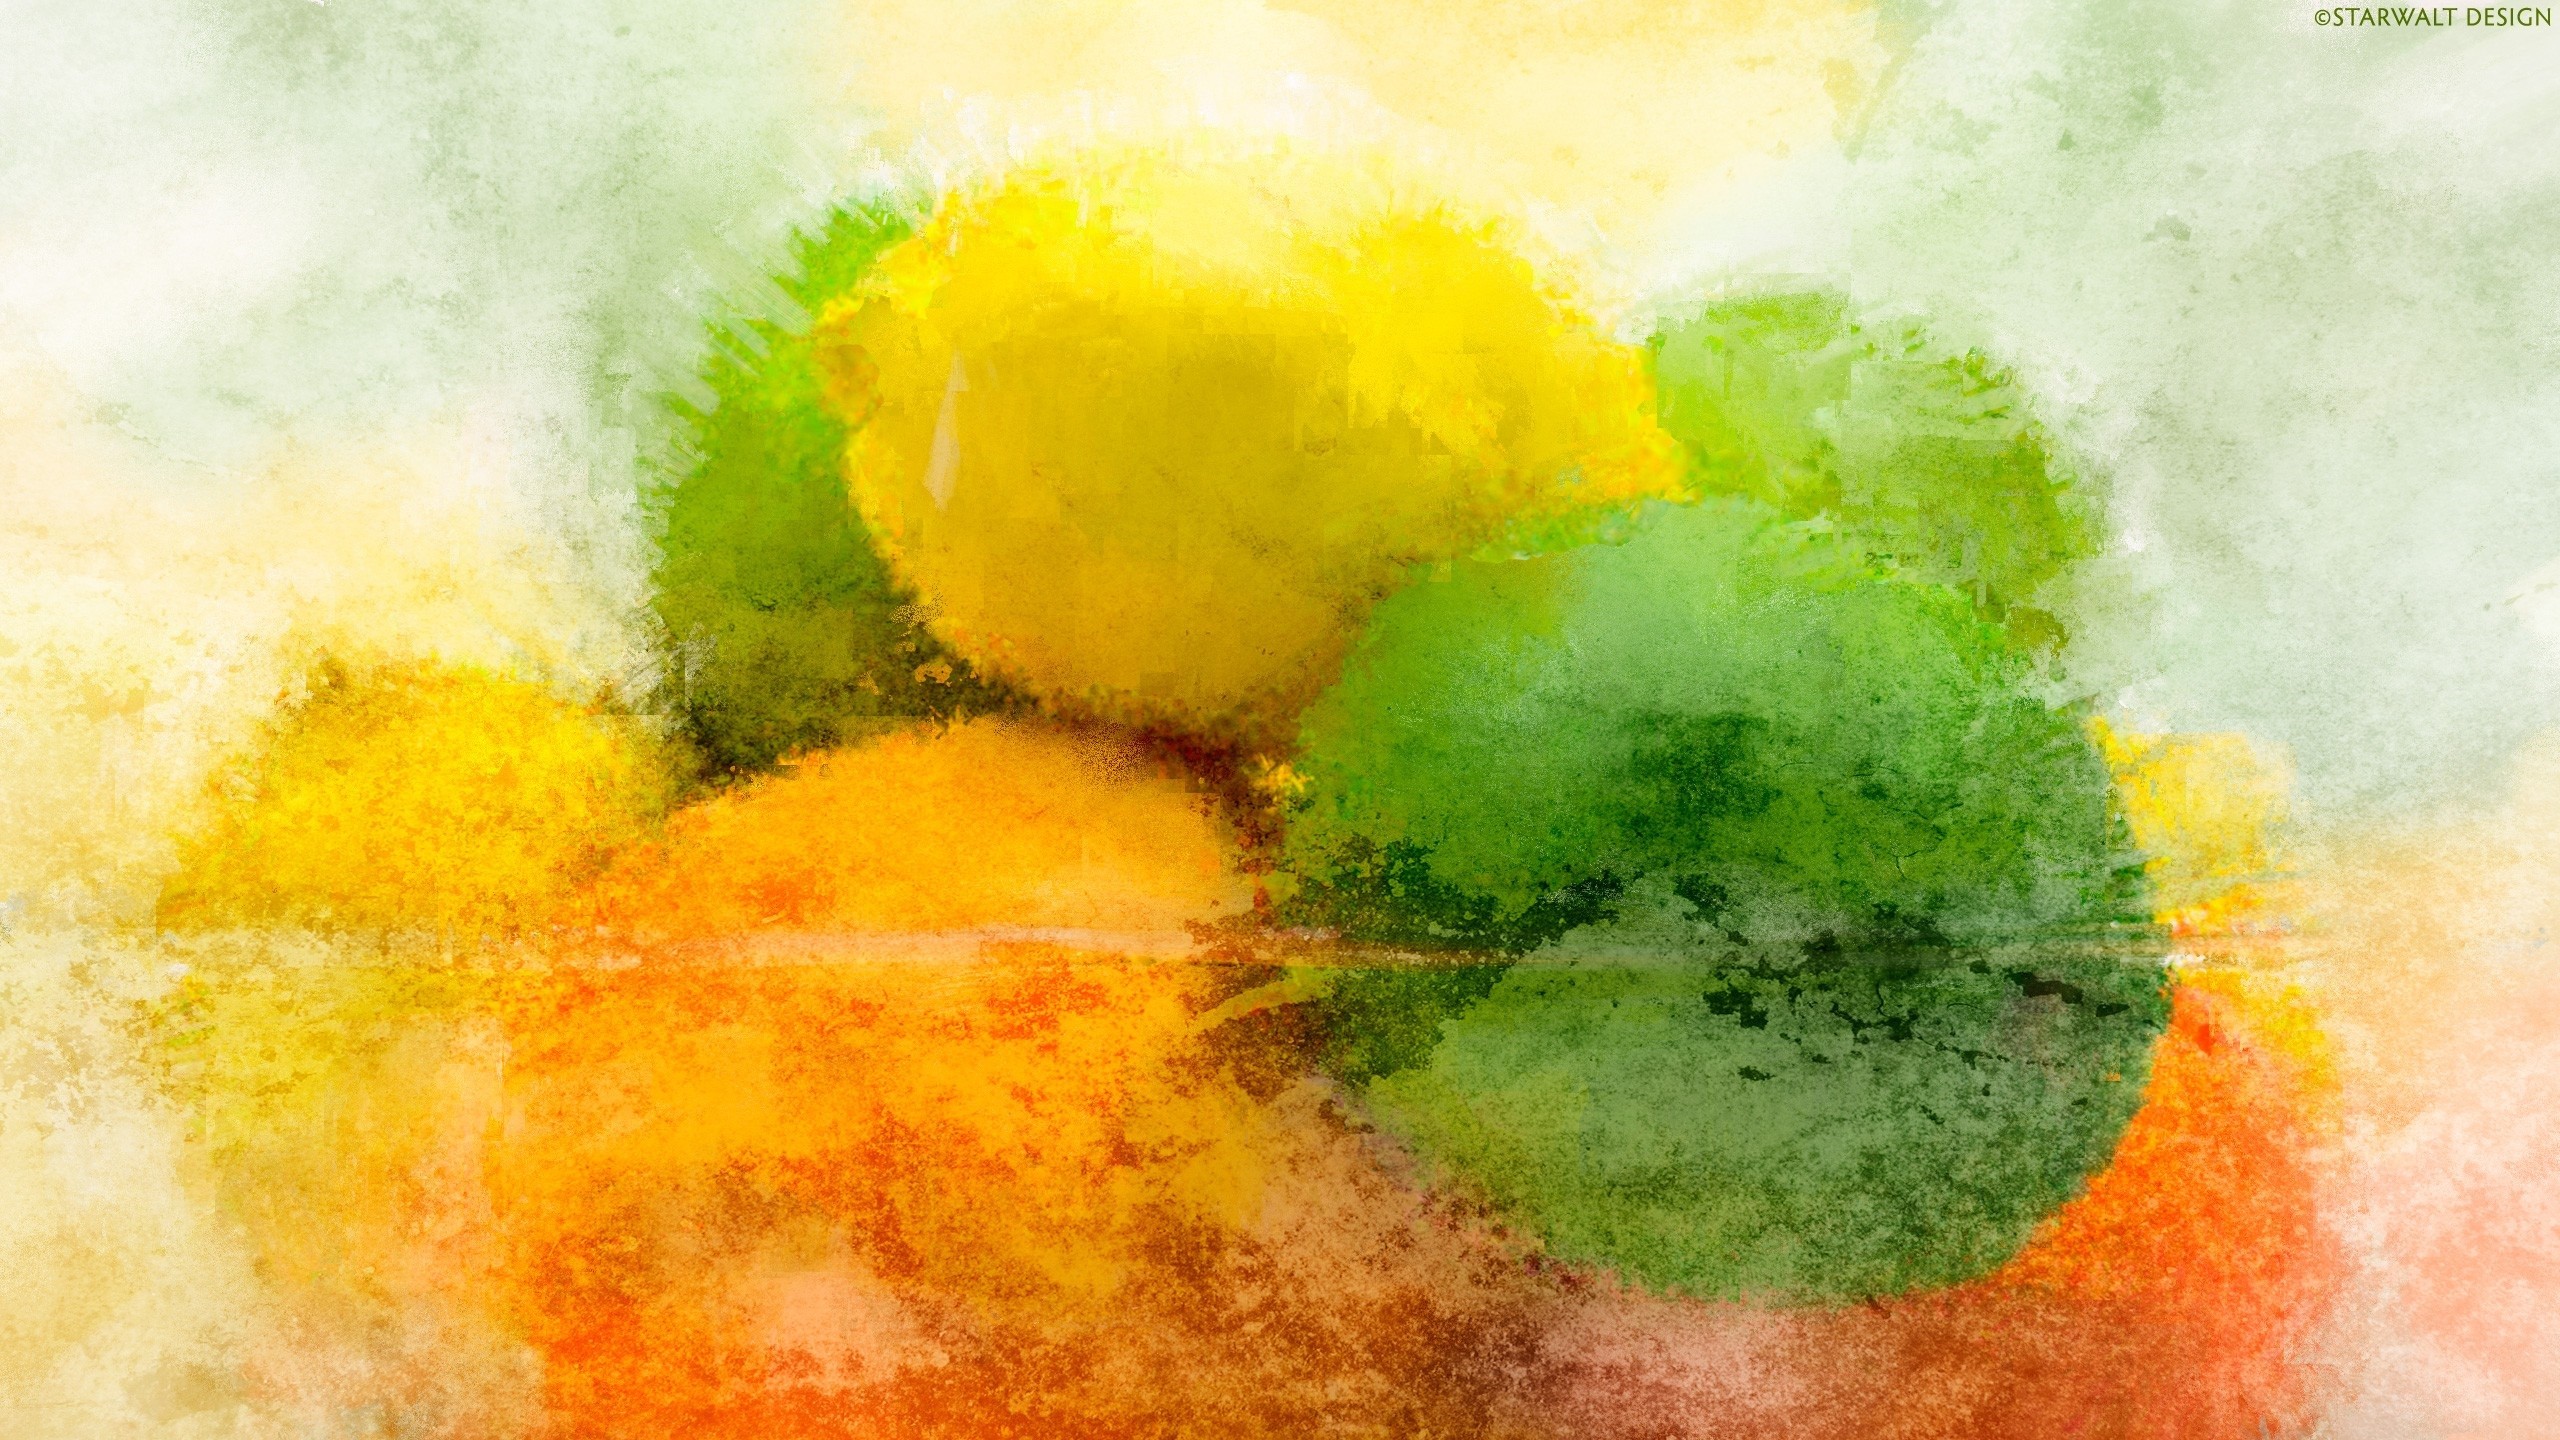 General 2560x1440 abstract lemons yellow orange green lime orange (fruit) grunge food digital art